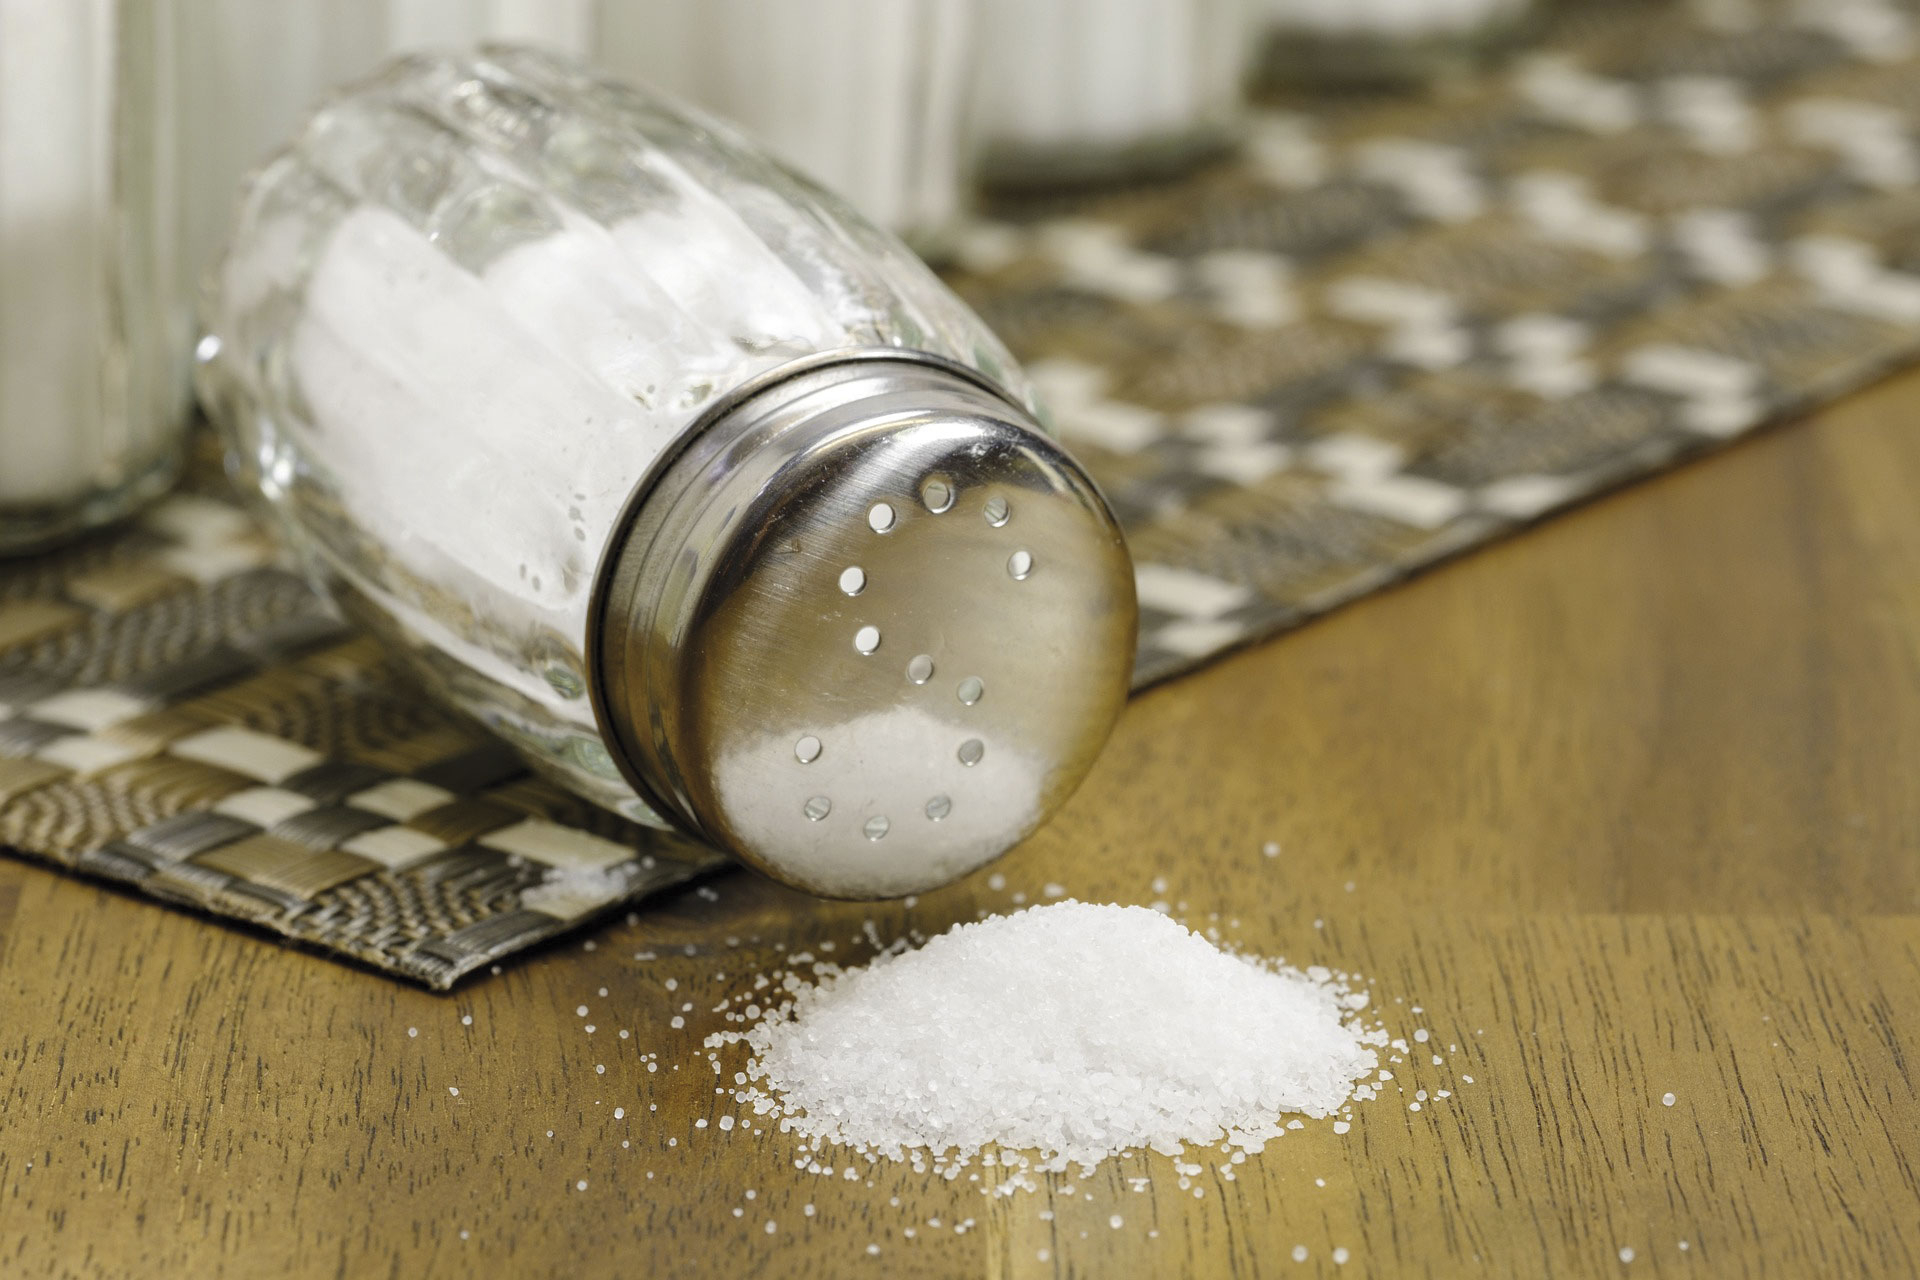 Veroorzaakt zout of suiker hoge bloeddruk? - BioGezond: infoblad over  gezond leven